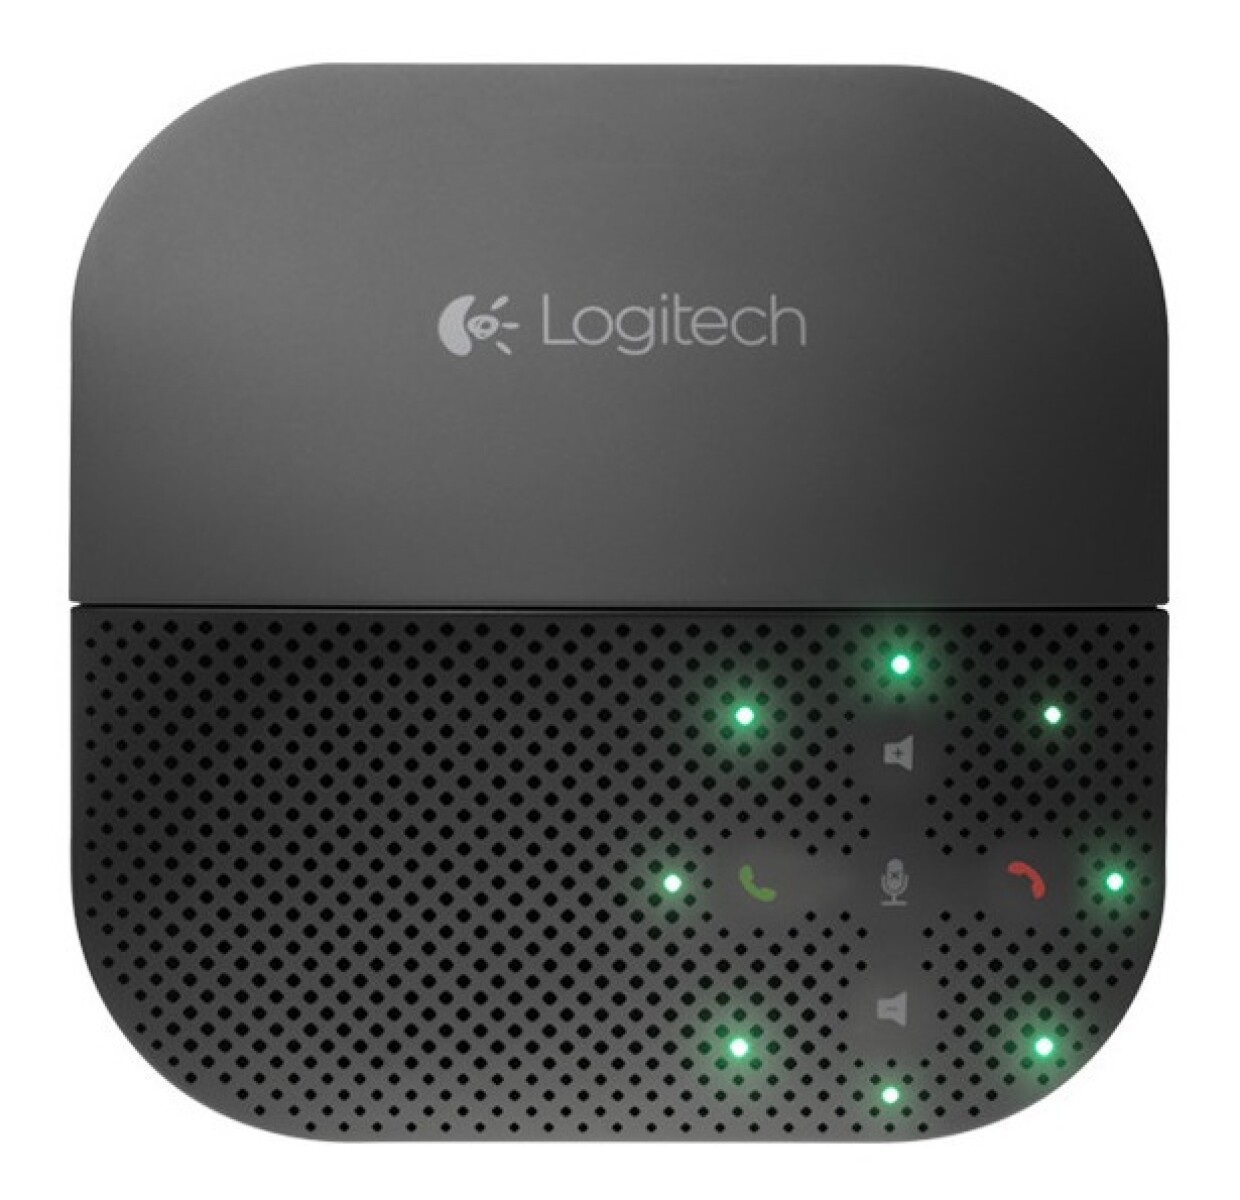 Parlante Logitech P710e Bluetooth Usb Conferencia Portable - 3035 